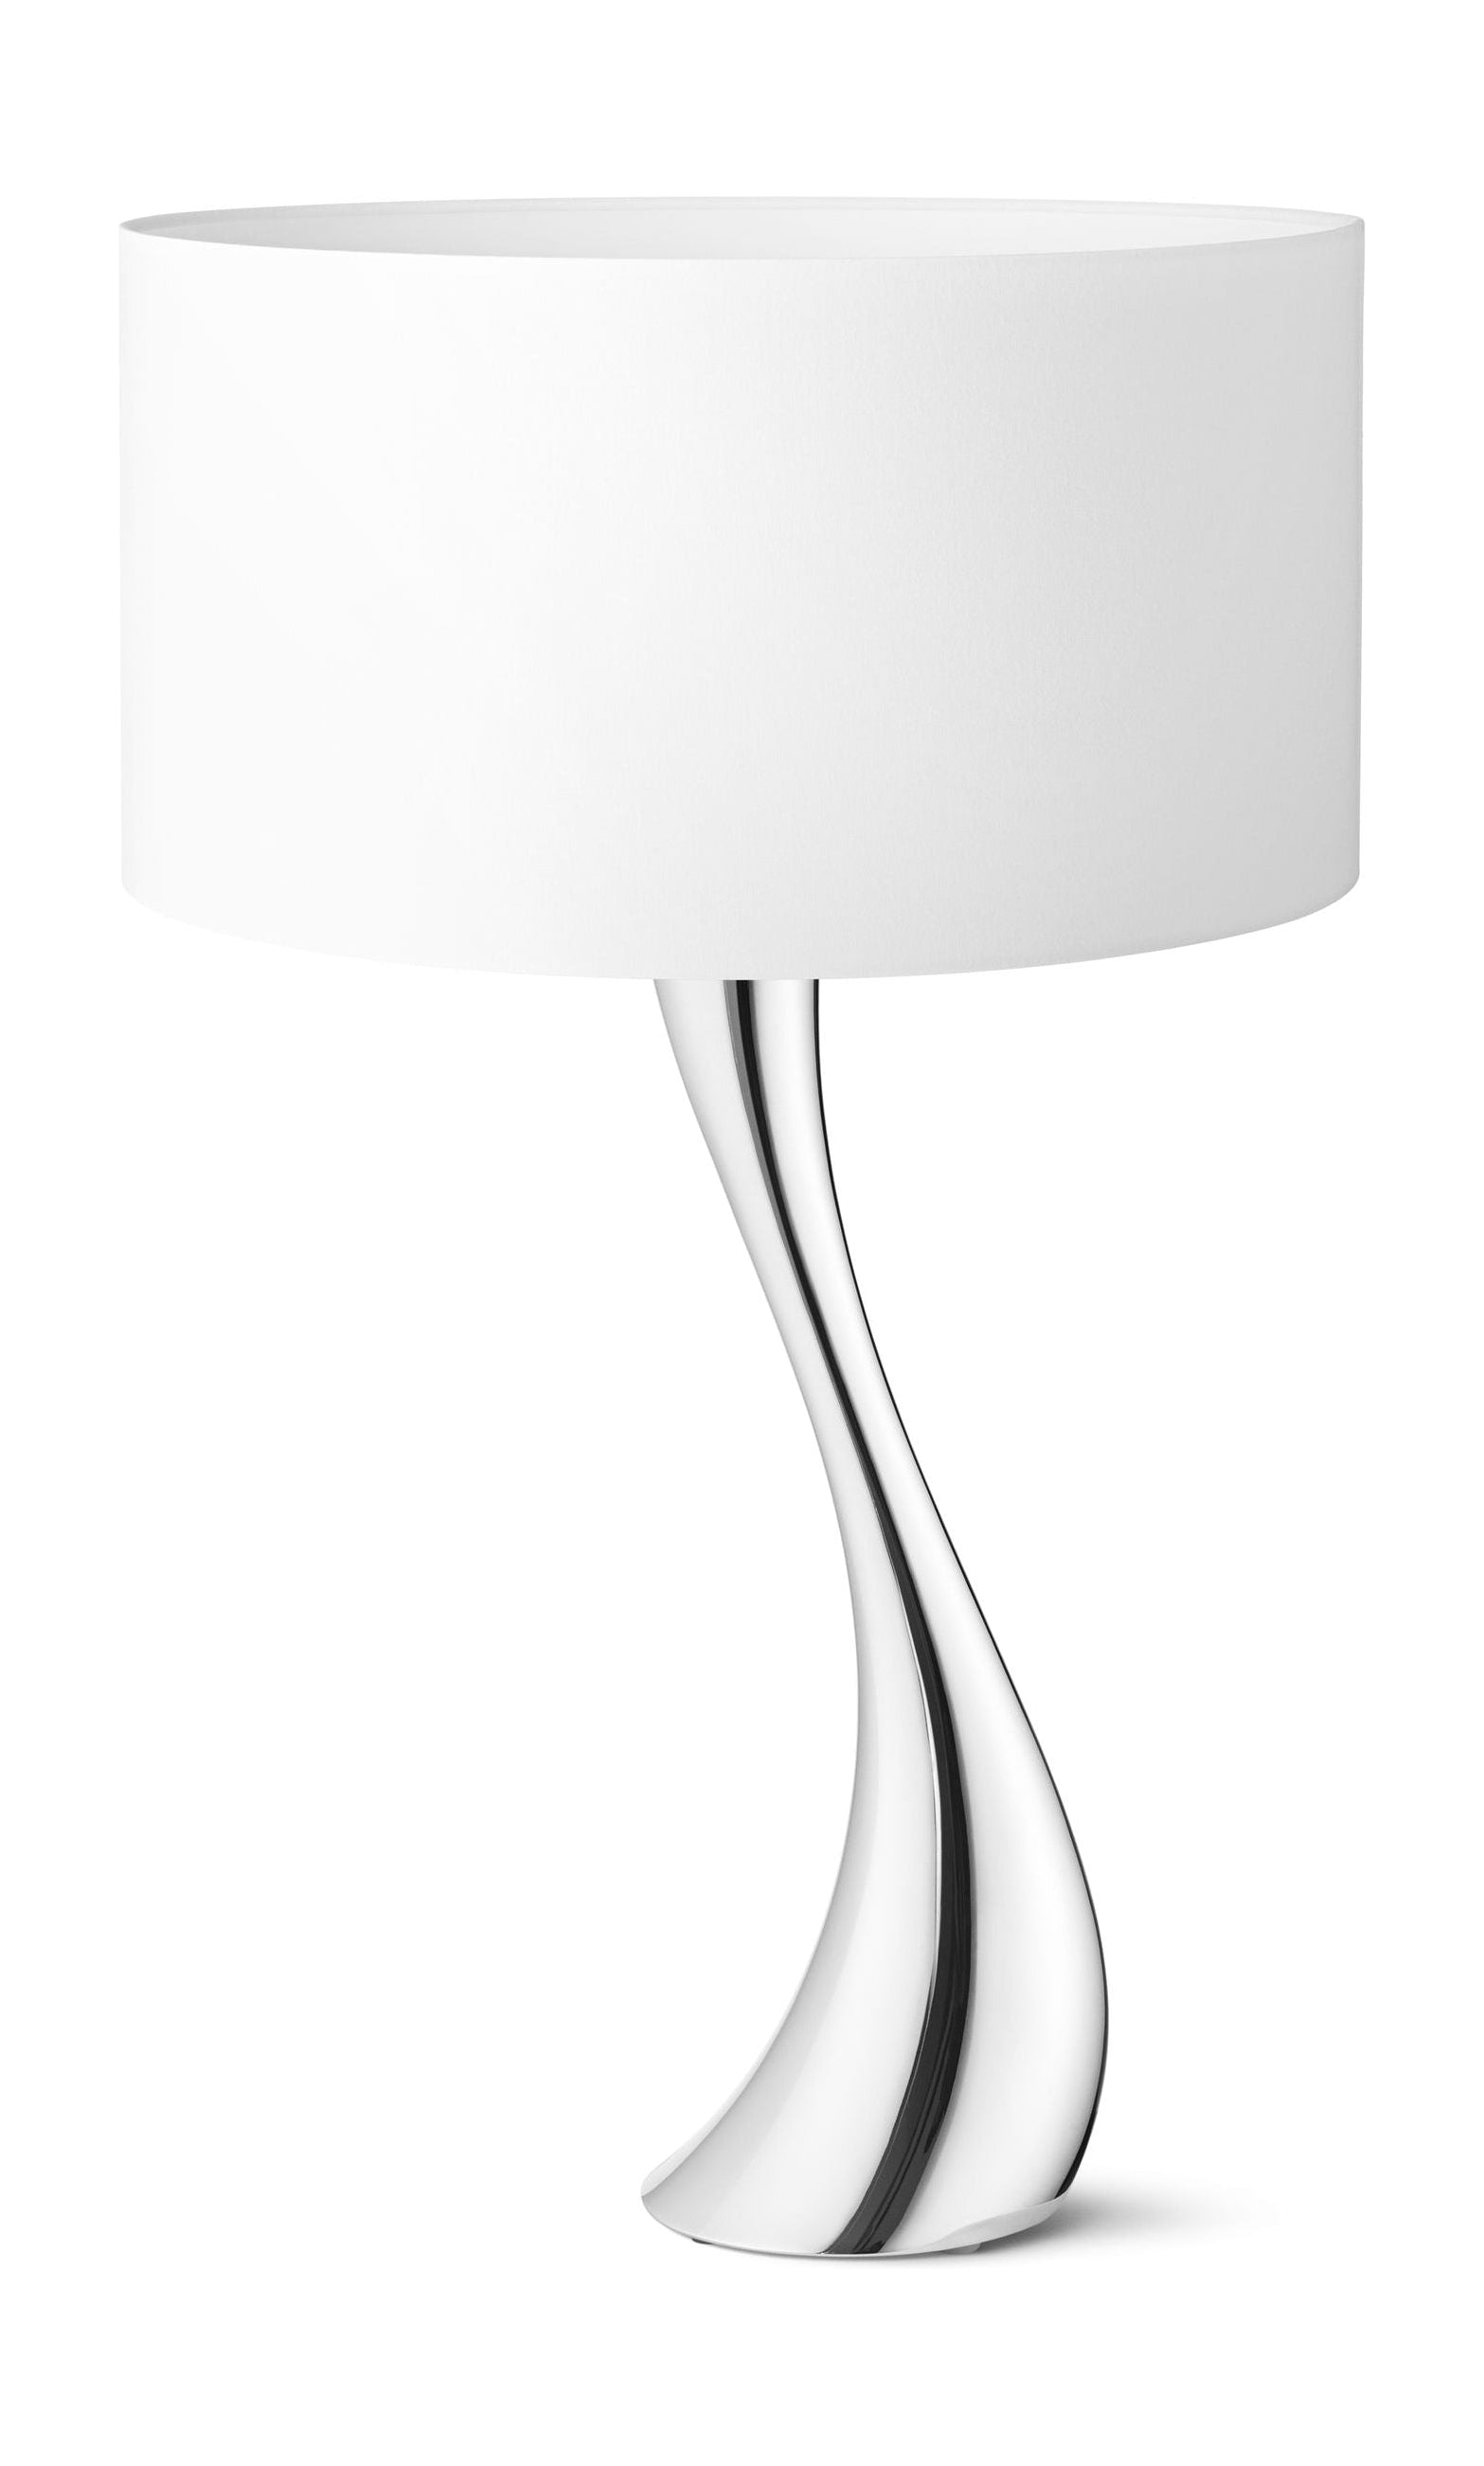 Georg Jensen Cobra Lamp White, ø 42 Cm